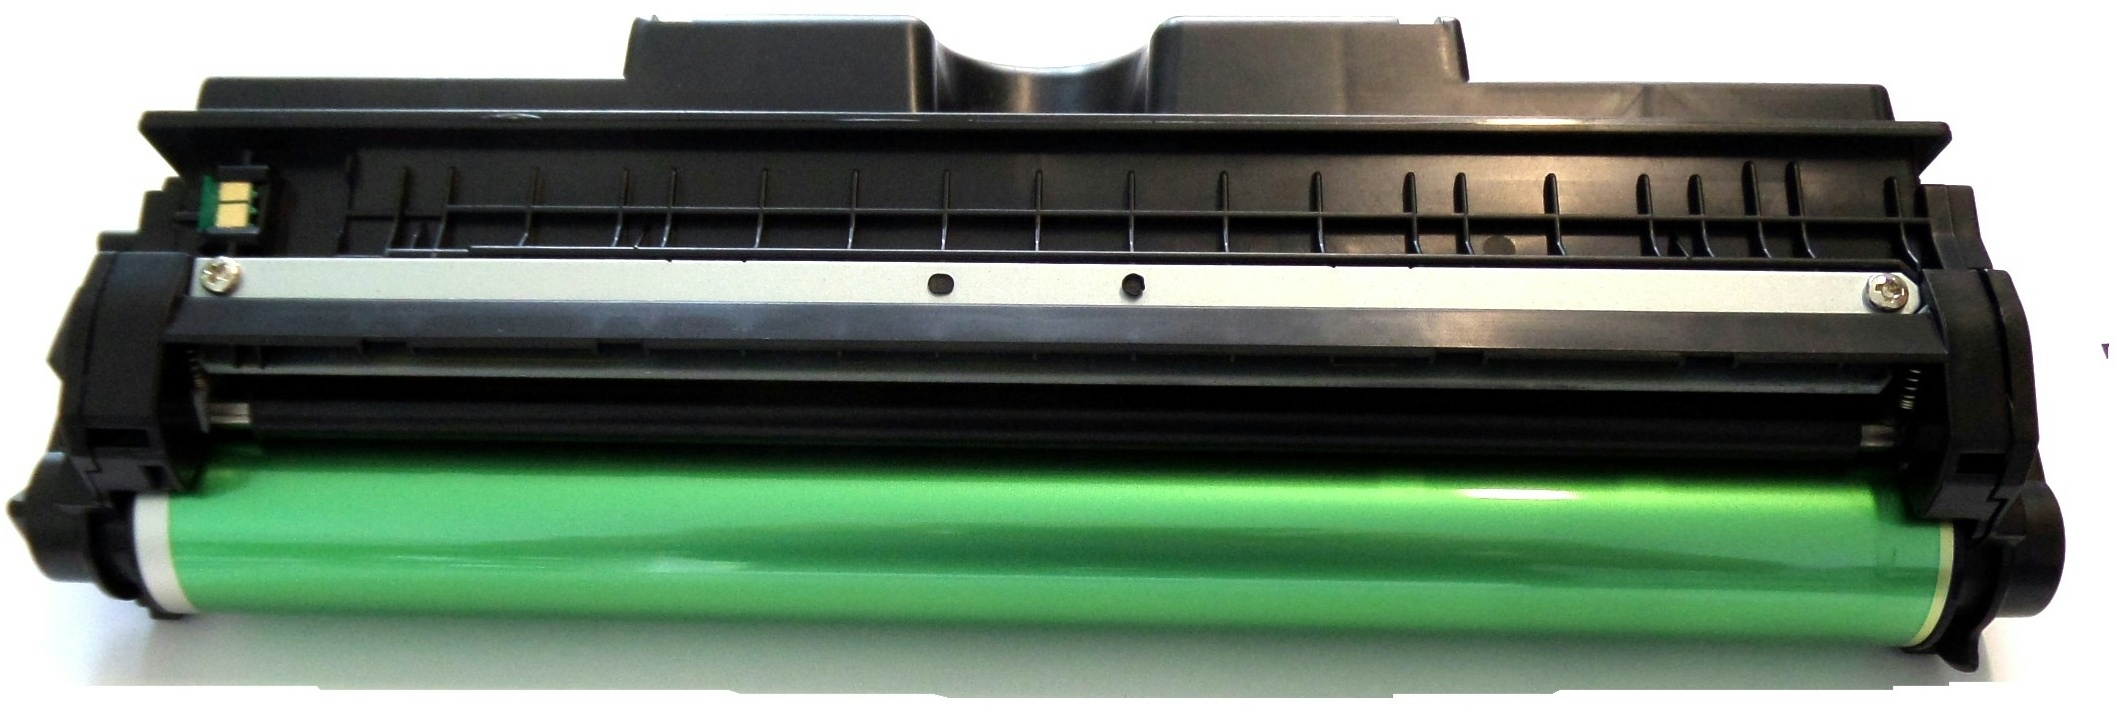 Trommel ( DR ) kompatibel f. HP Color LaserJet Pro CP 1022 ersetzt HP-Trommel CE314A